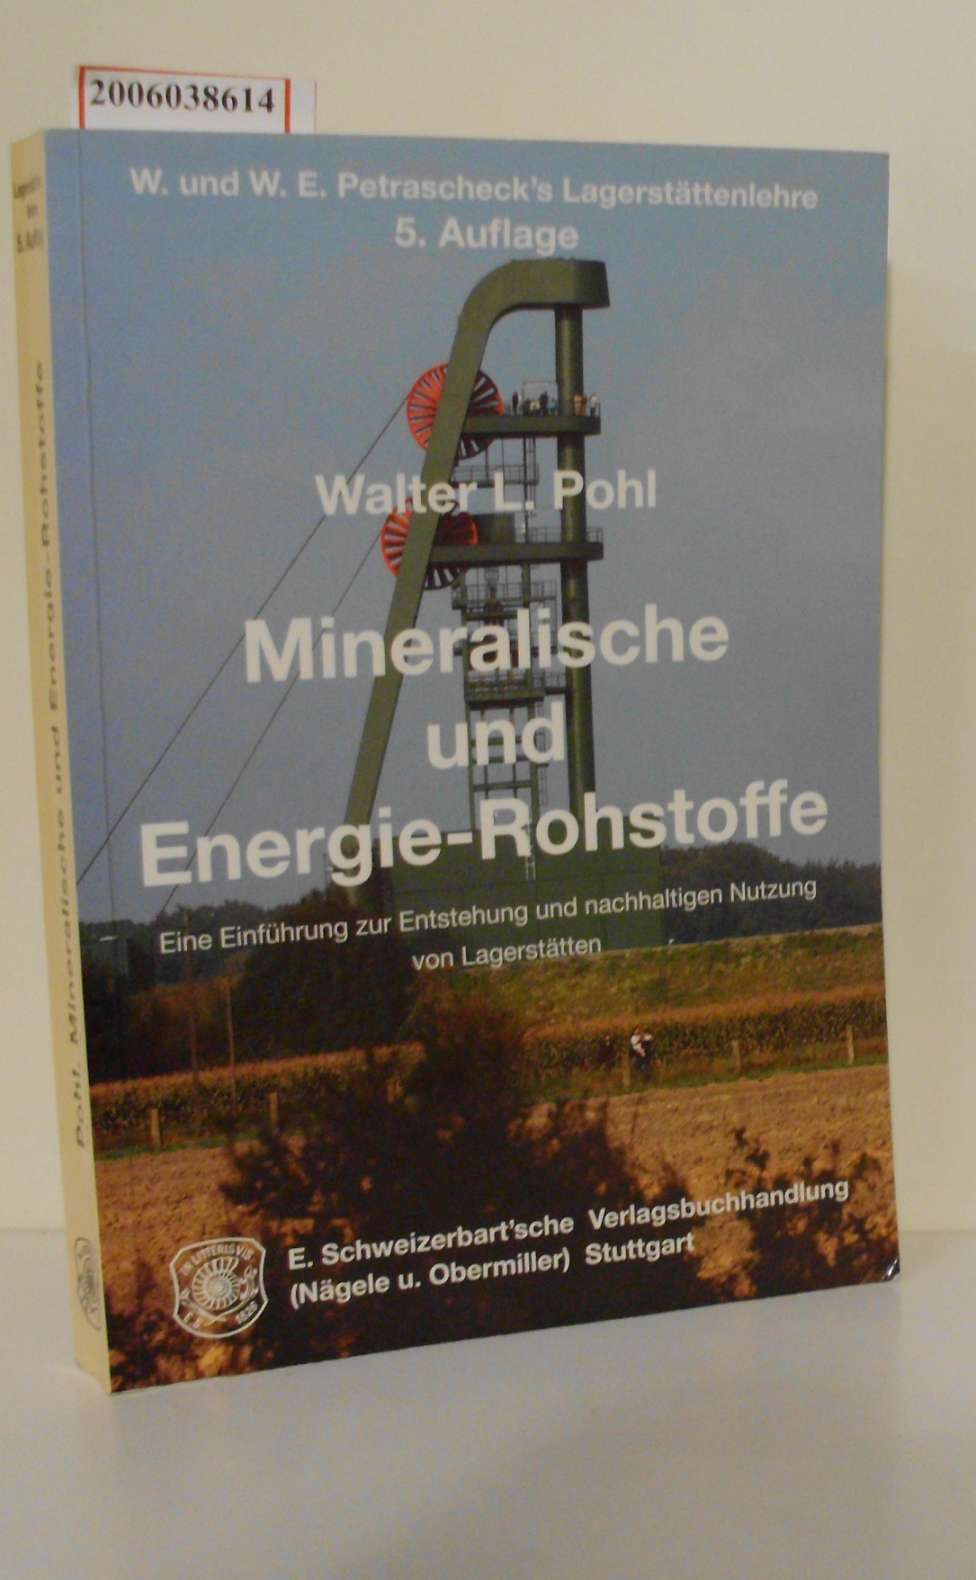 Mineralische und Energie-Rohstoffe Eine Einführung zur Entstehung und nachhaltigen Nutzung von Lagerstätten - Walter L. Pohl